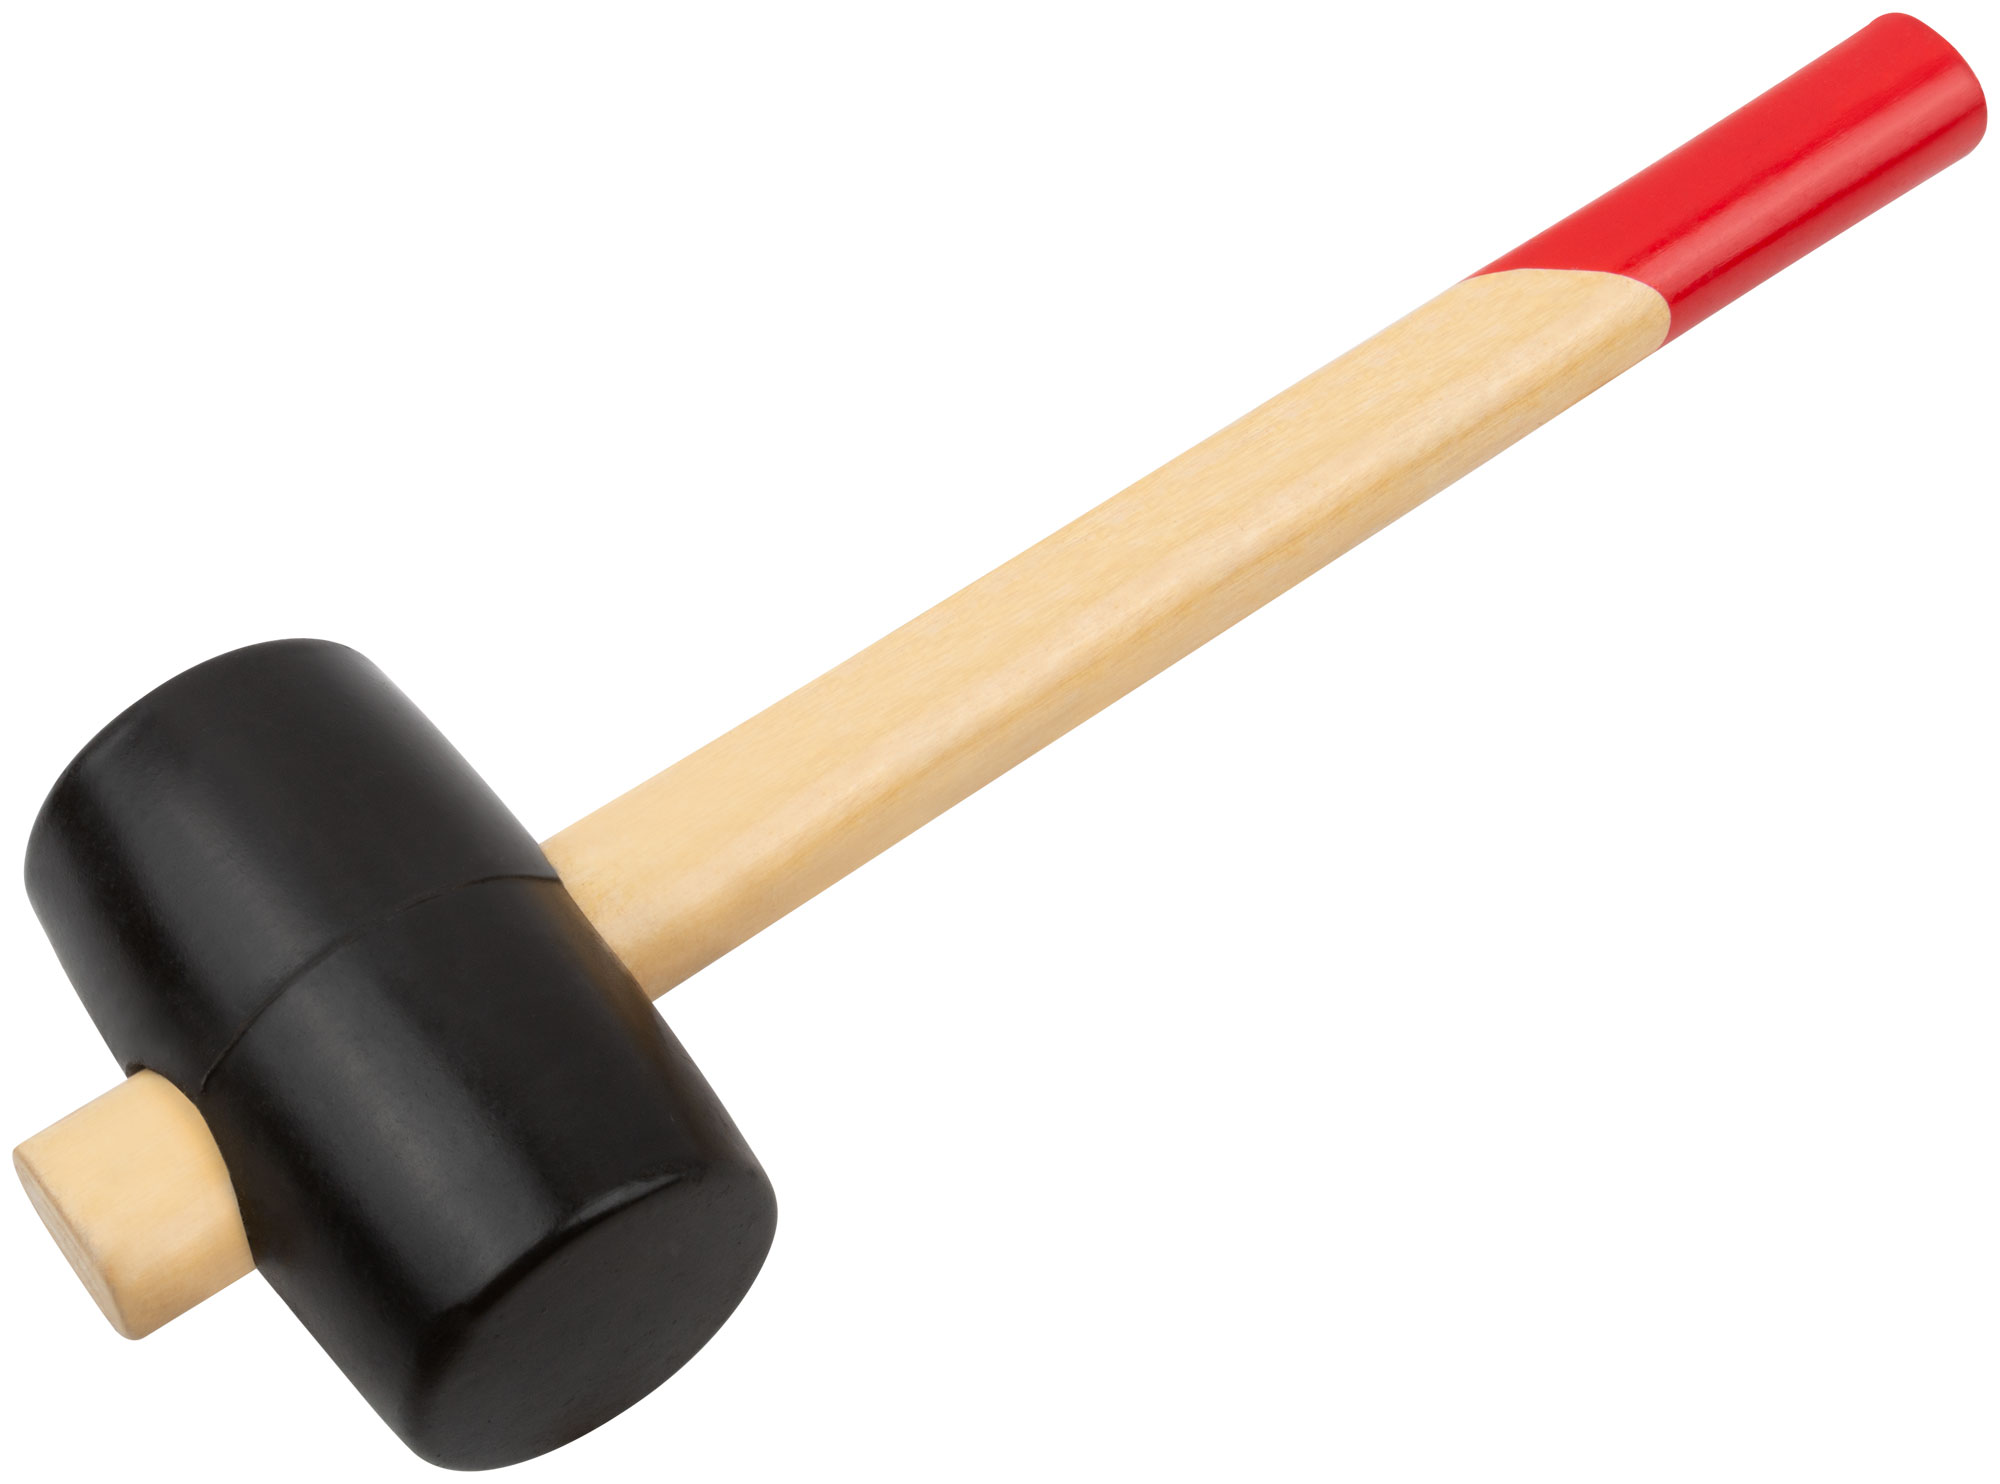 Киянка резиновая, 50 мм ( 300 гр ) КУРС 45350 киянка курс оптима 45350 резиновая деревянная ручка 50 мм